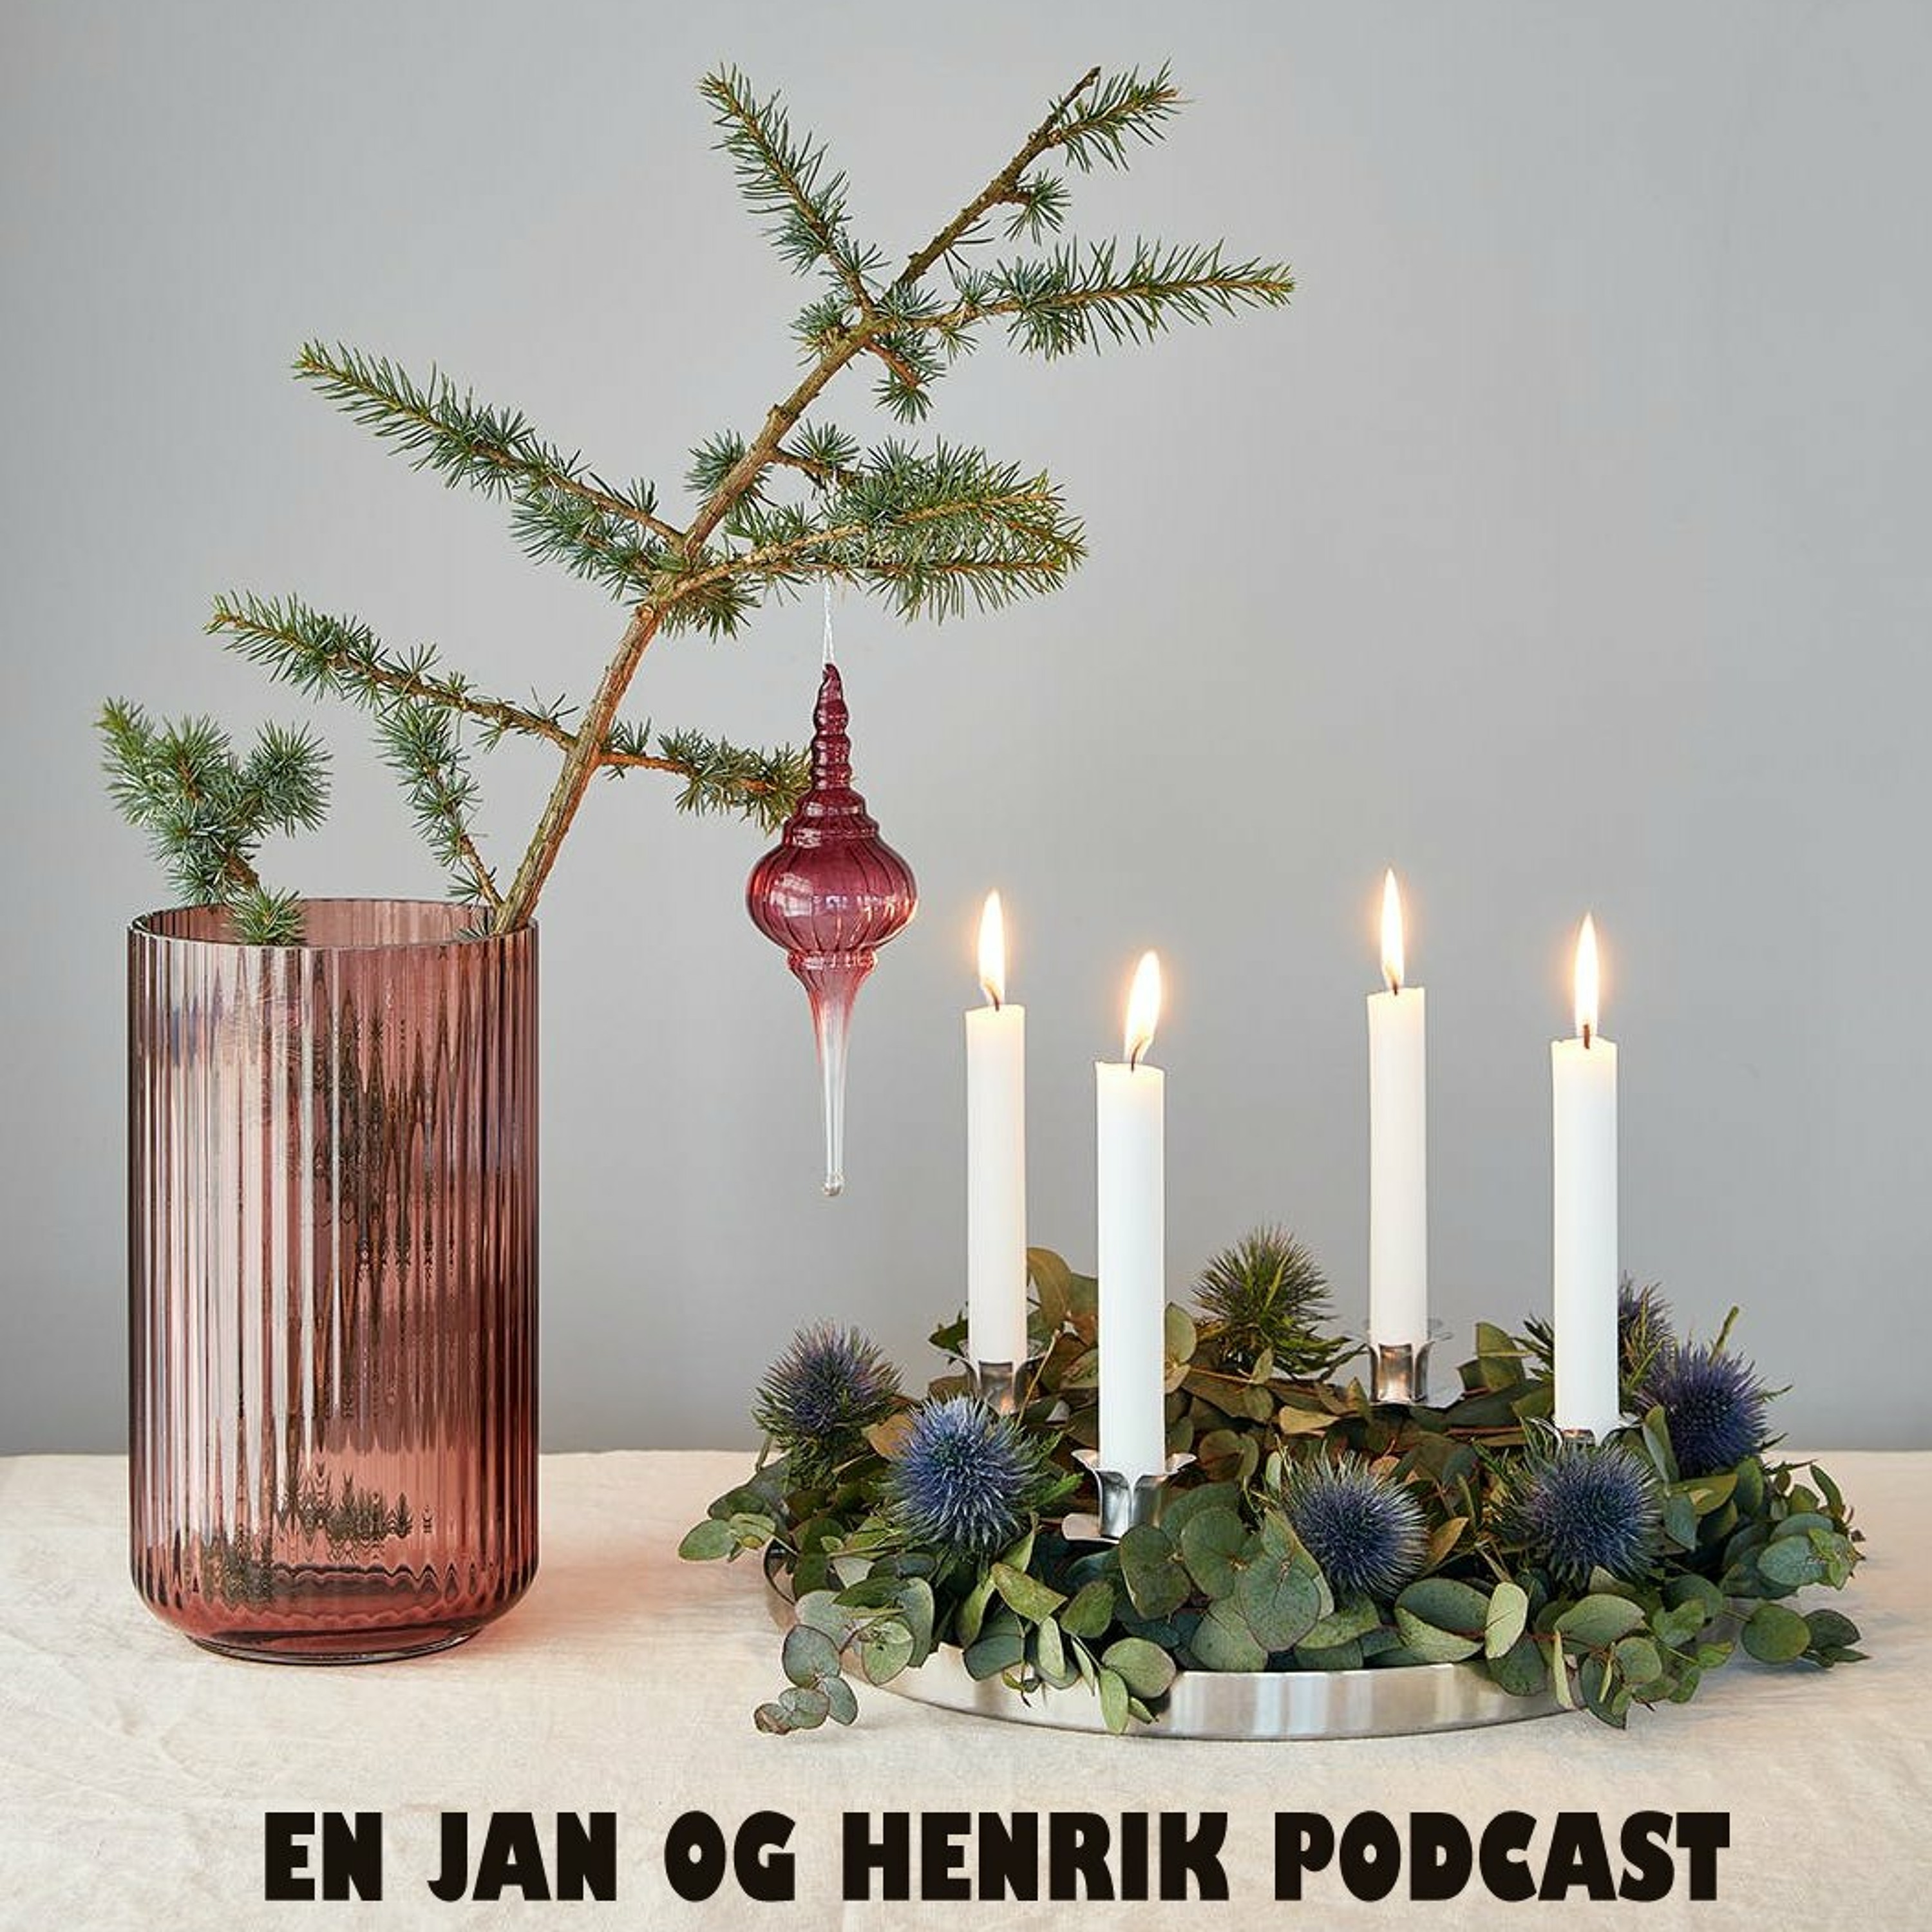 Huset På Christianshavn og gamle danske podcast. Kronologisk gennemgang. Podcast – Podtail